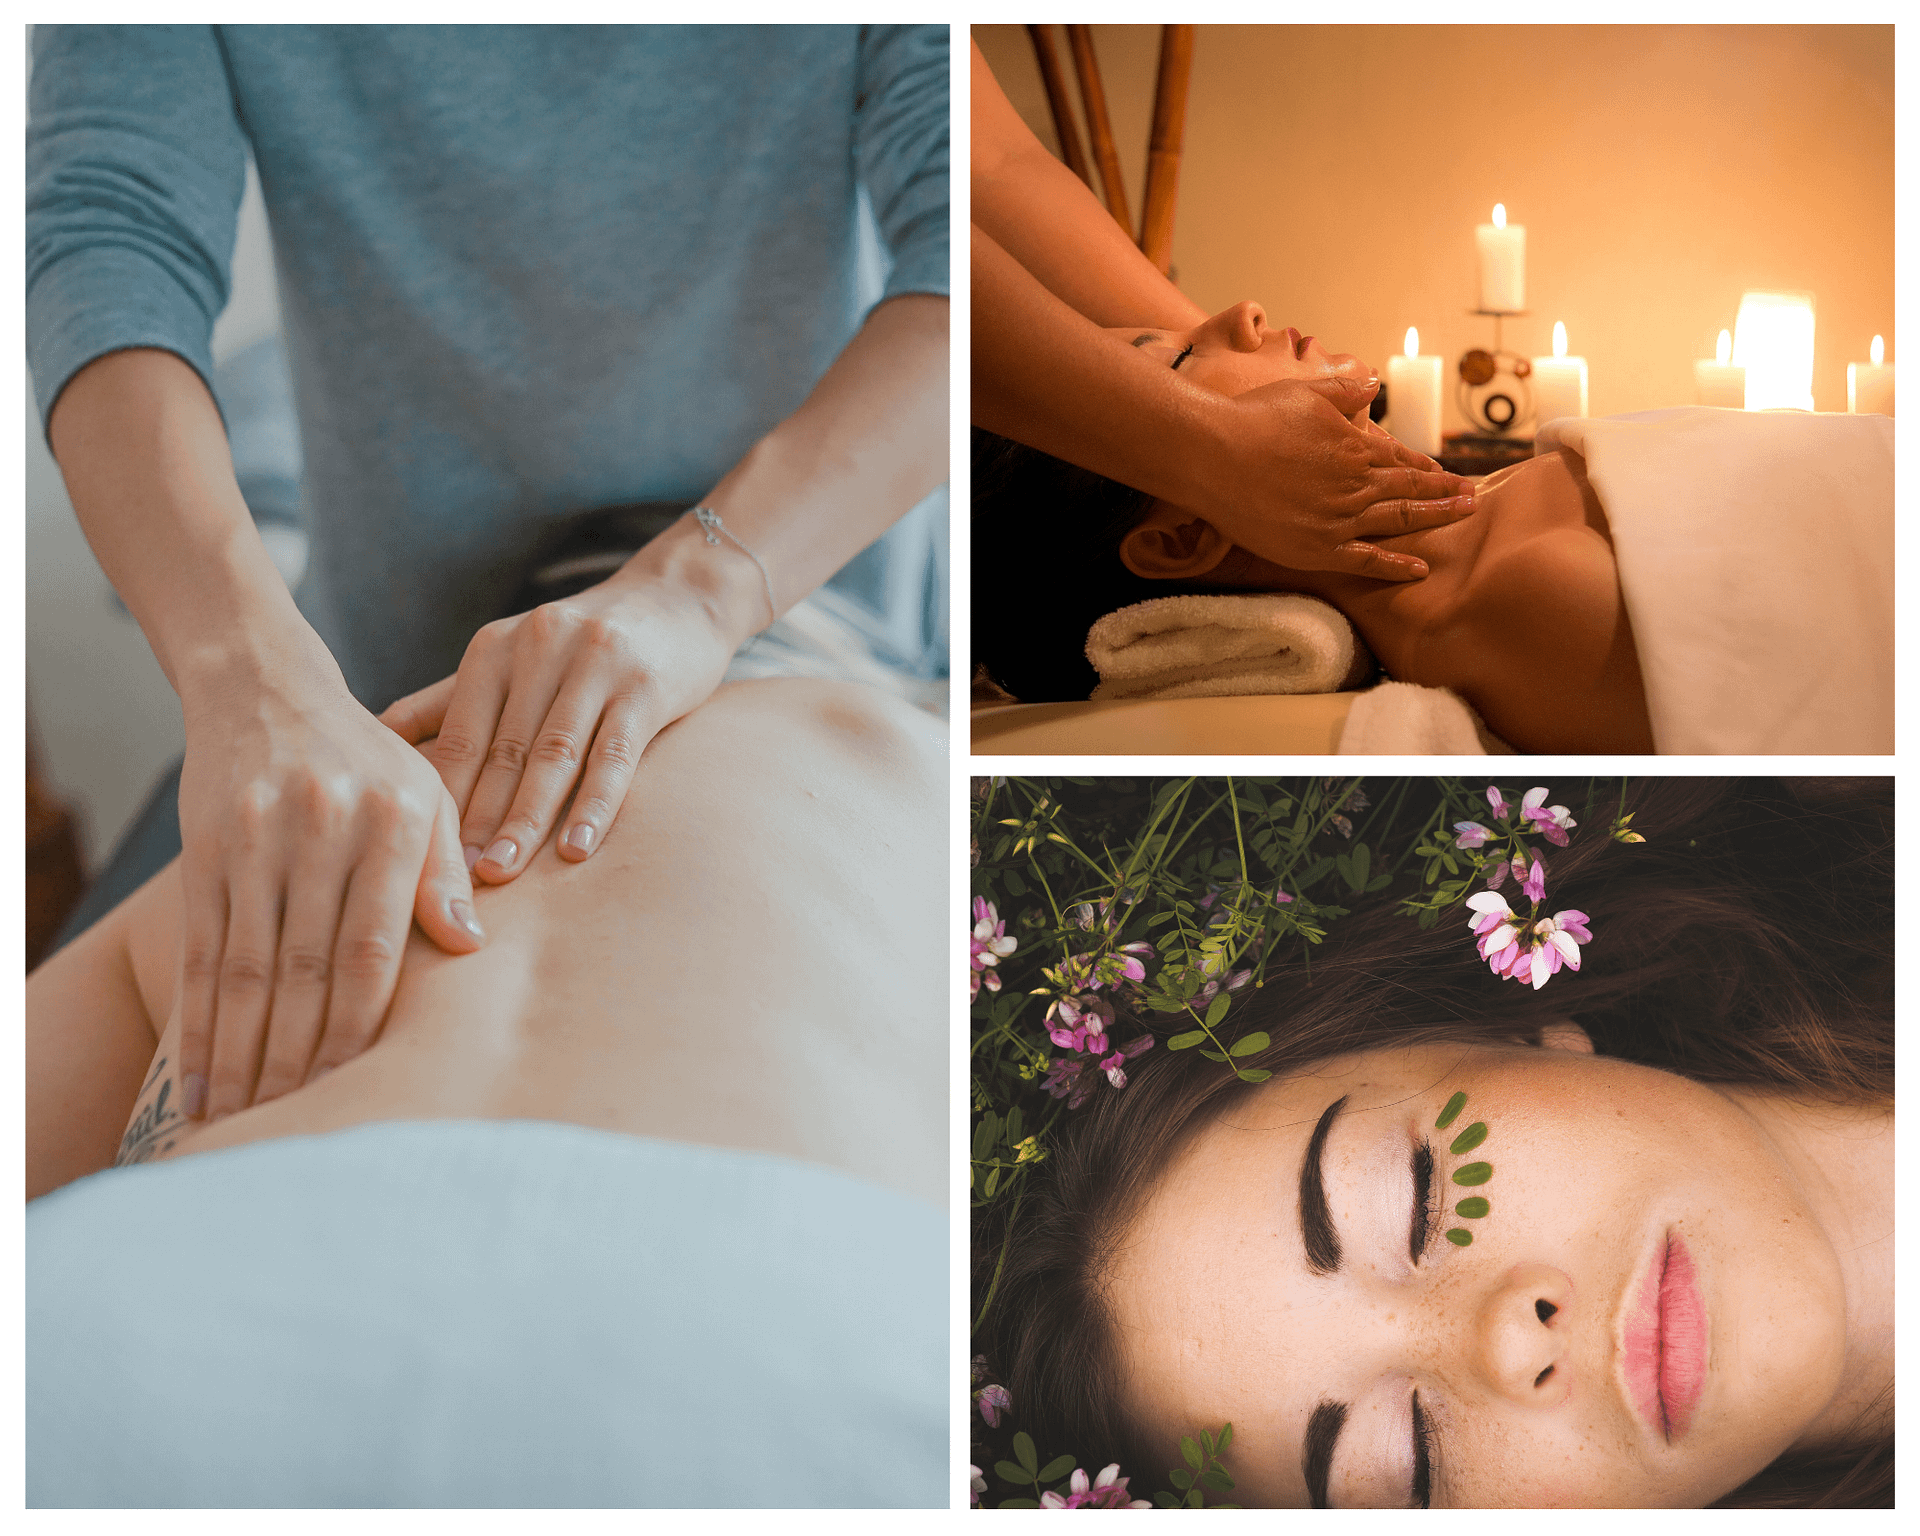 Types of massage